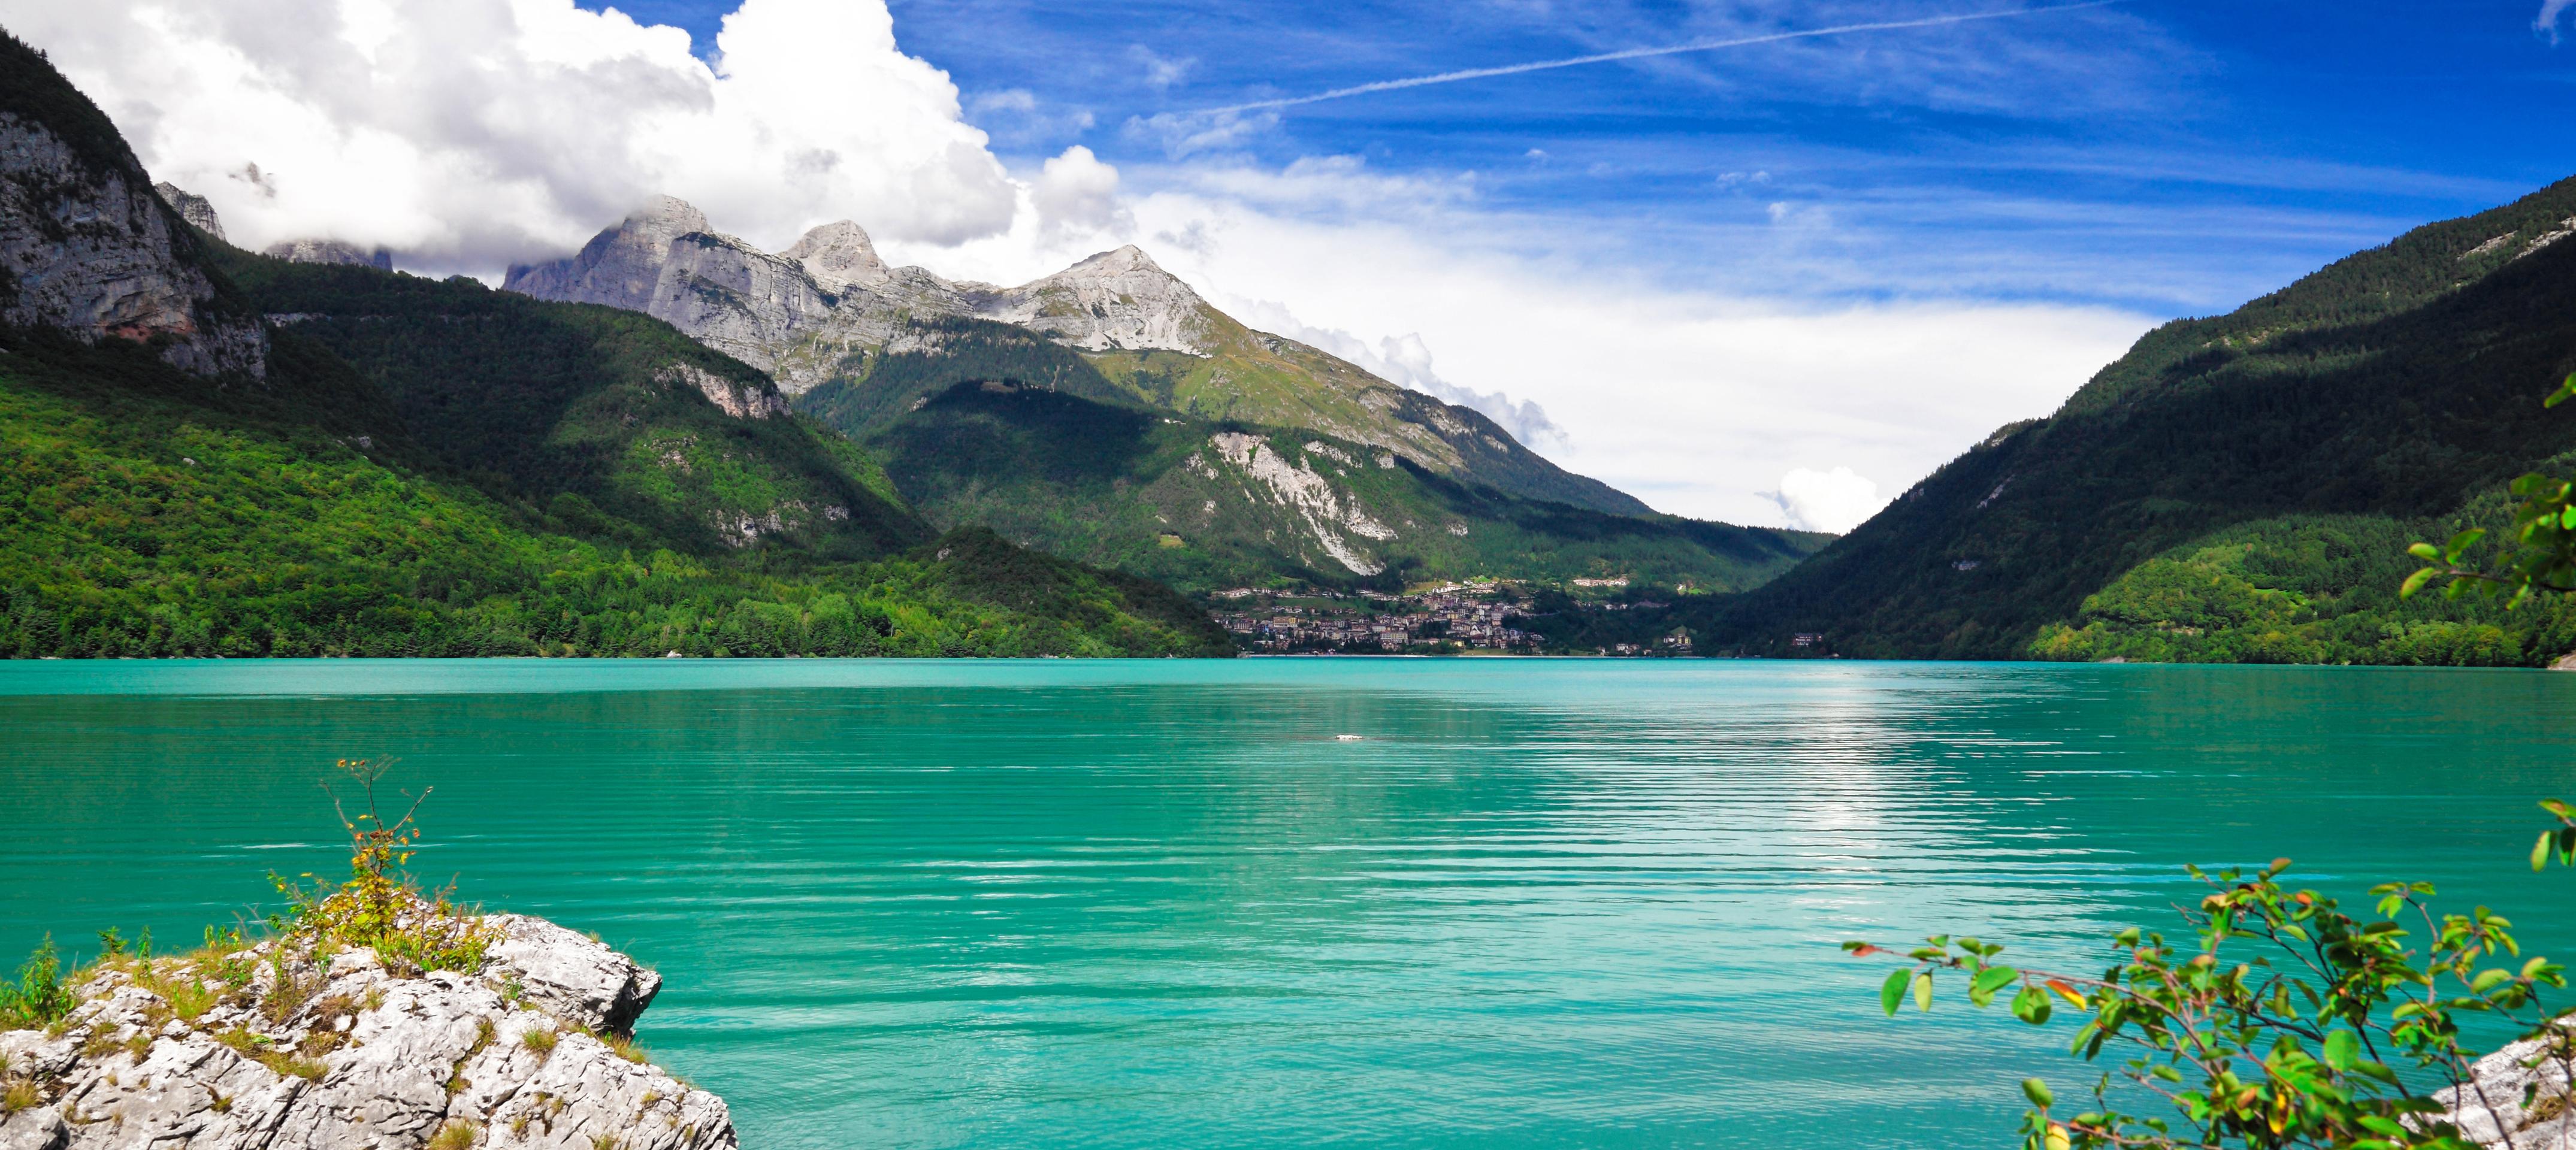 Voyage en train Bernina Express et visite de St Moritz - en Suisse